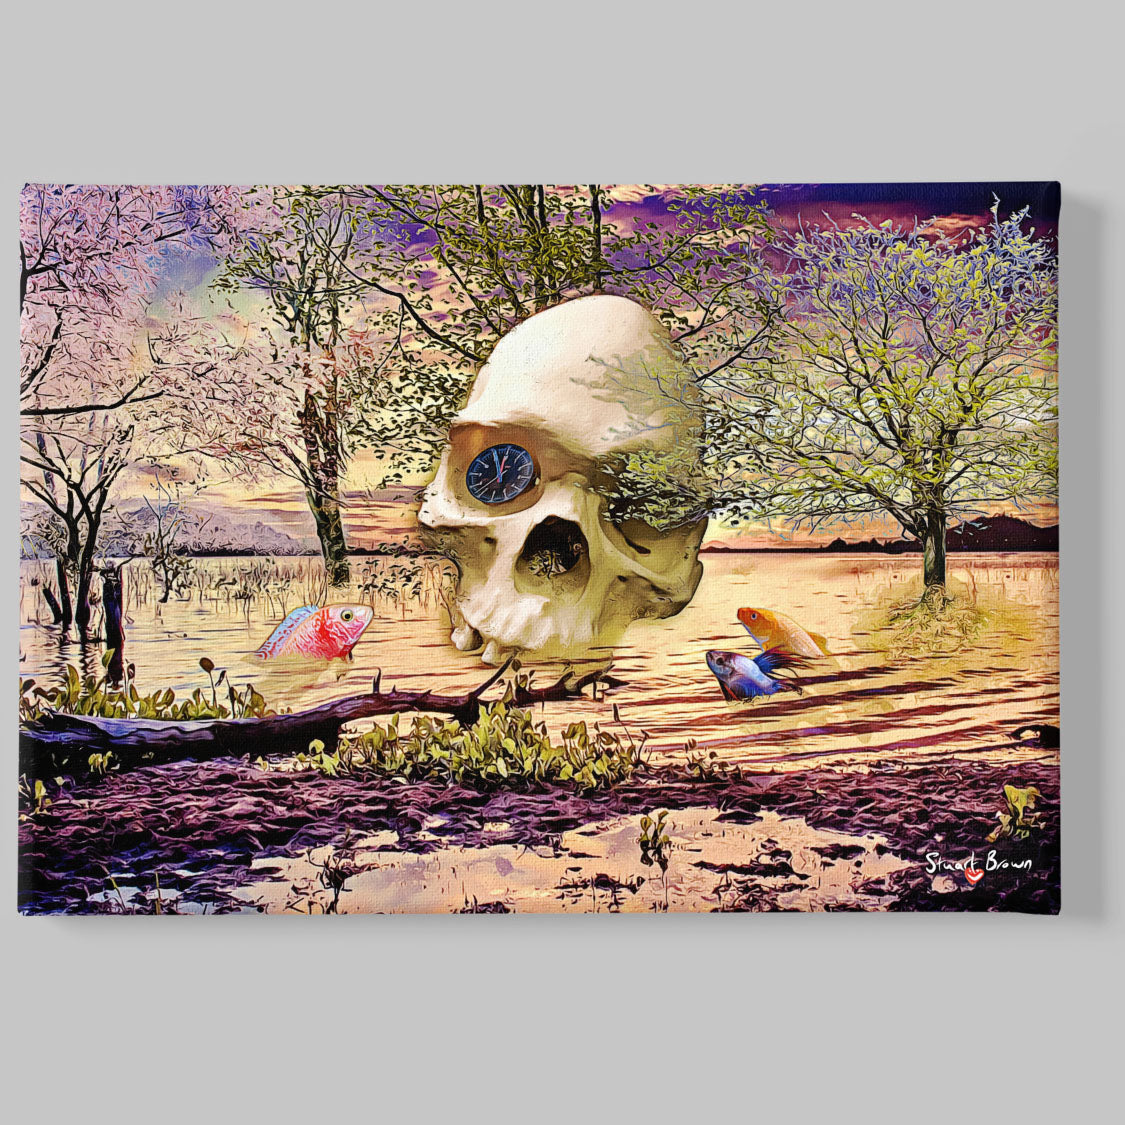 skull art